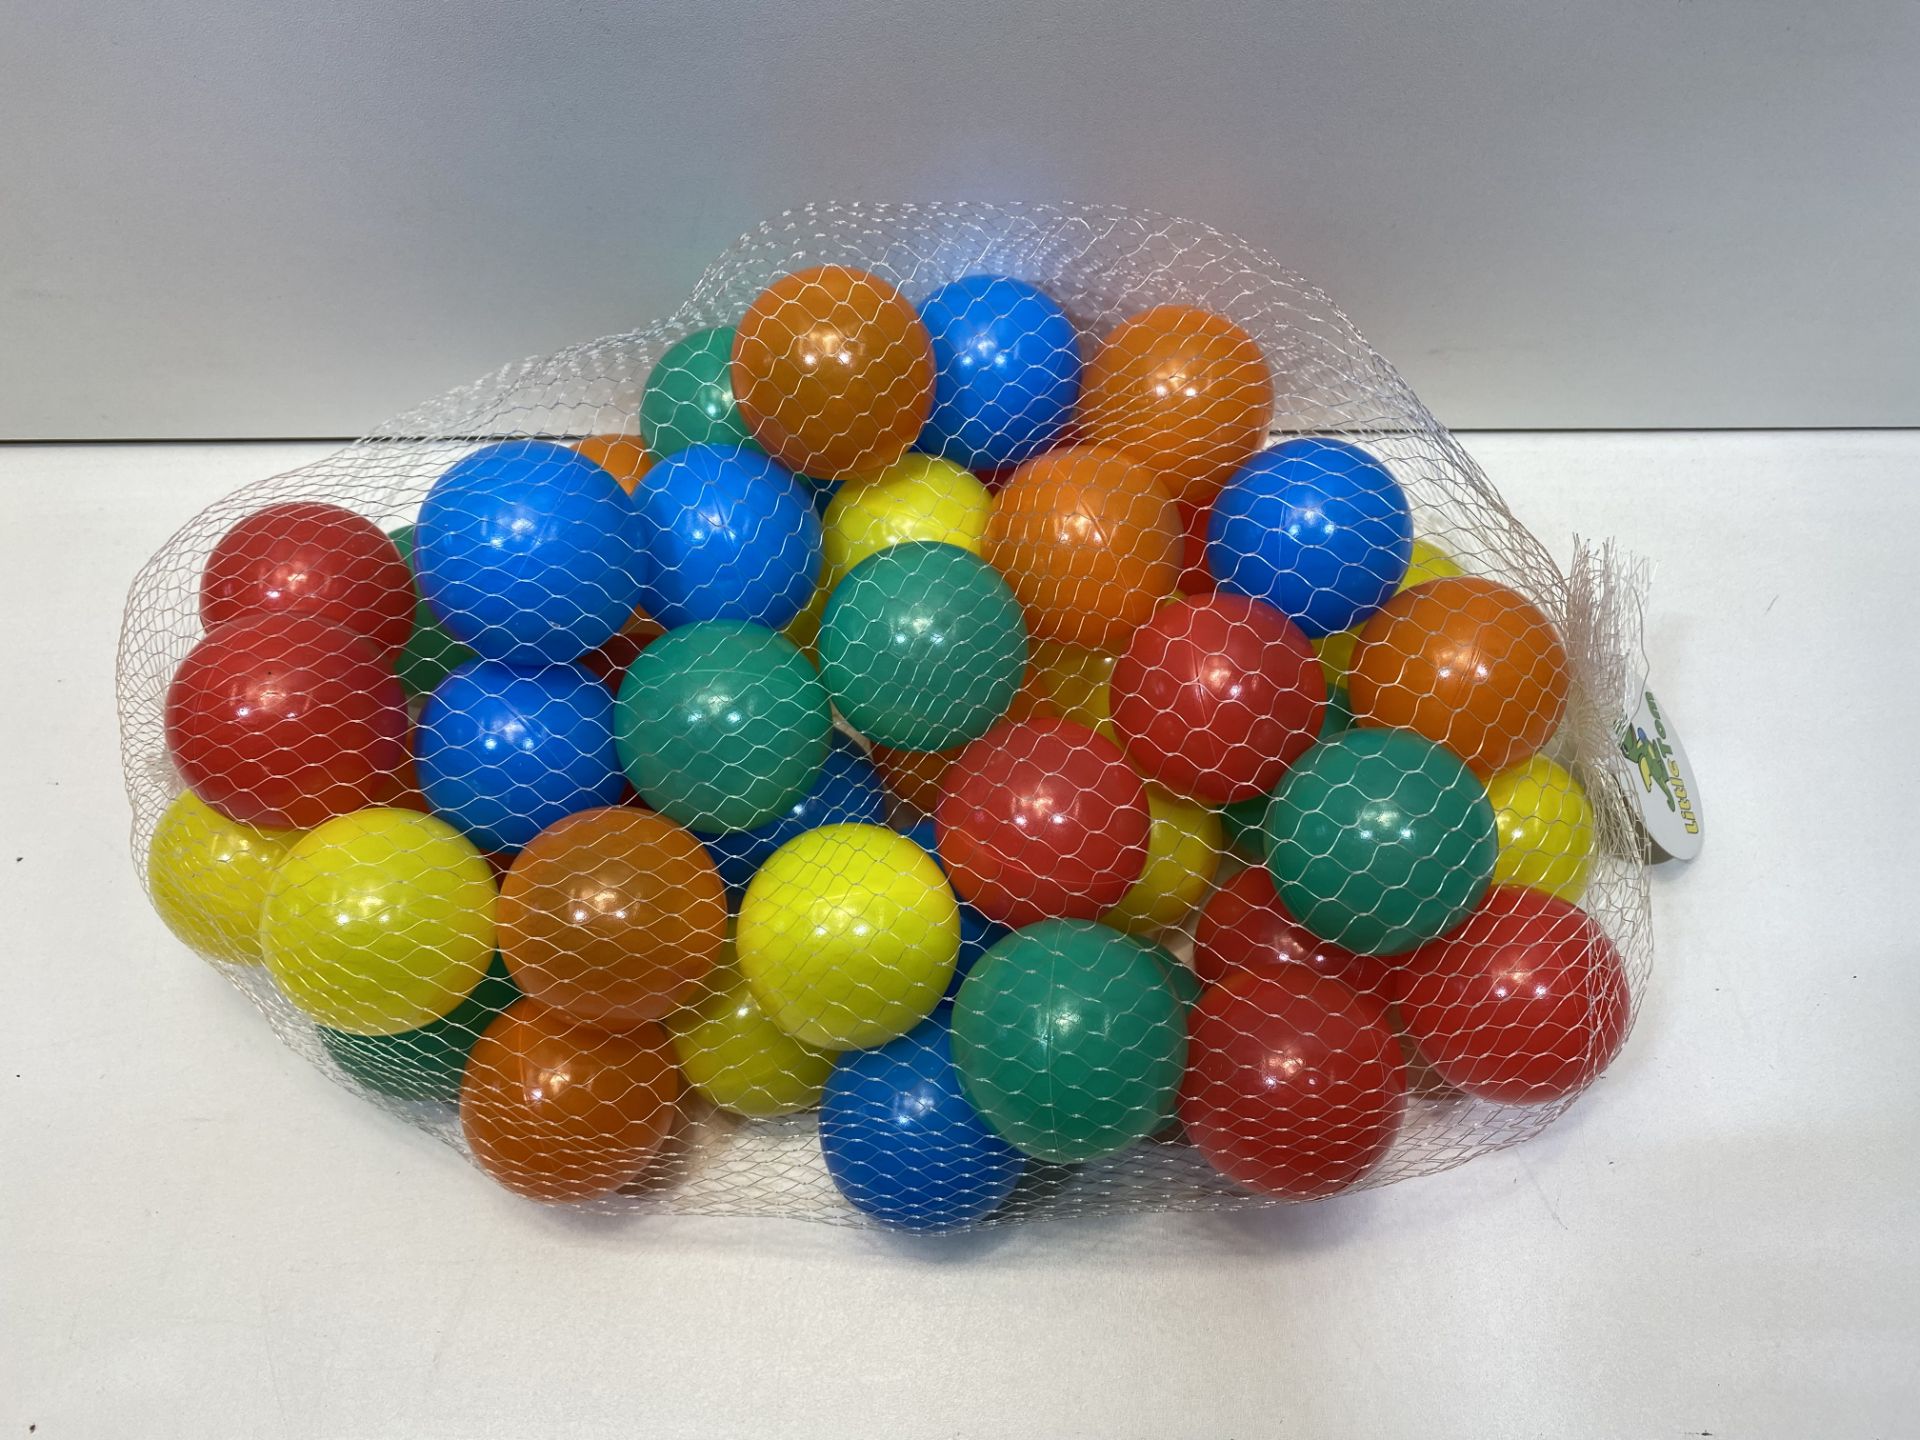 14 x LittleTom 50 Plastic Balls 5.5 cm for Ball Pits Children Kids Baby Pool Balls multi-coloured |4 - Image 2 of 3